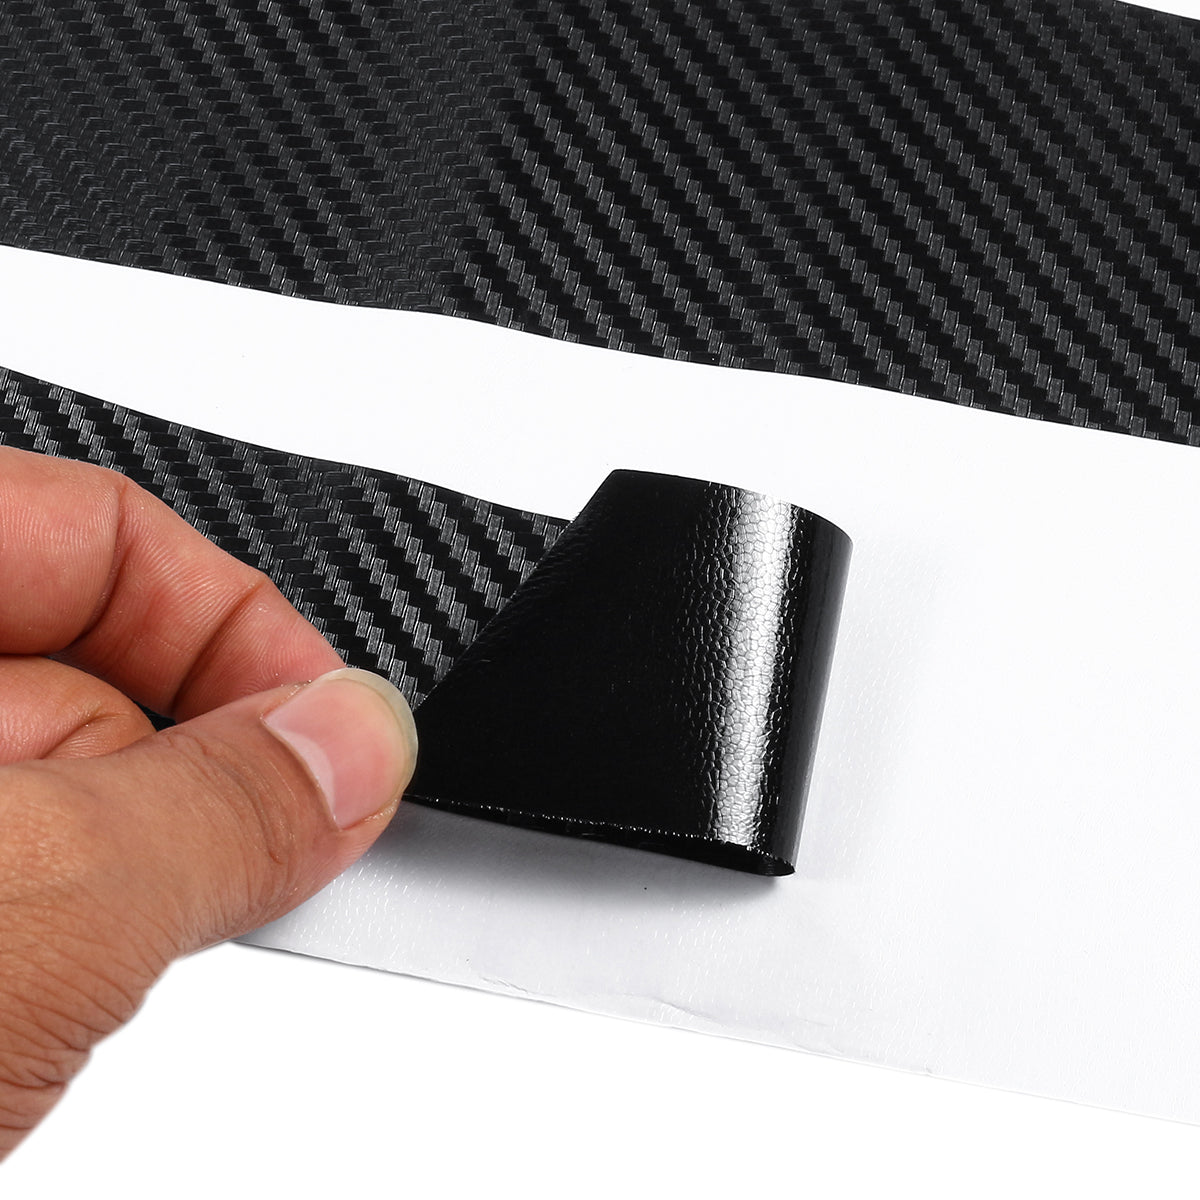 LHD Carbon Fiber Interior Sticker Vinyl For BMW 1 Series 2012-2016 - Auto GoShop